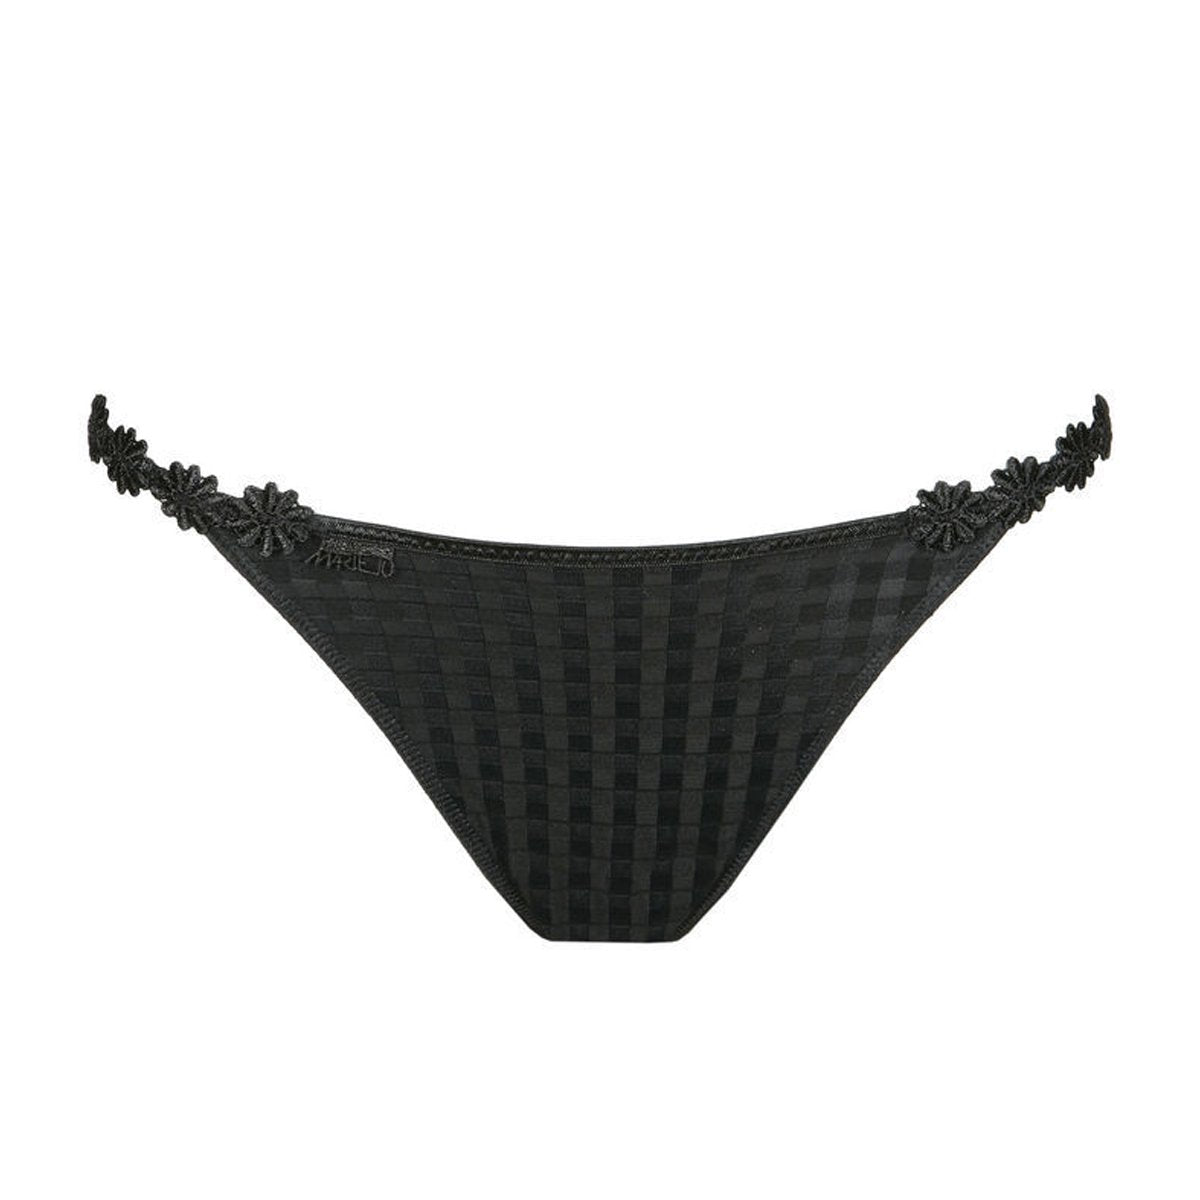 Marie Jo Avero String Panty in Black 050-0412